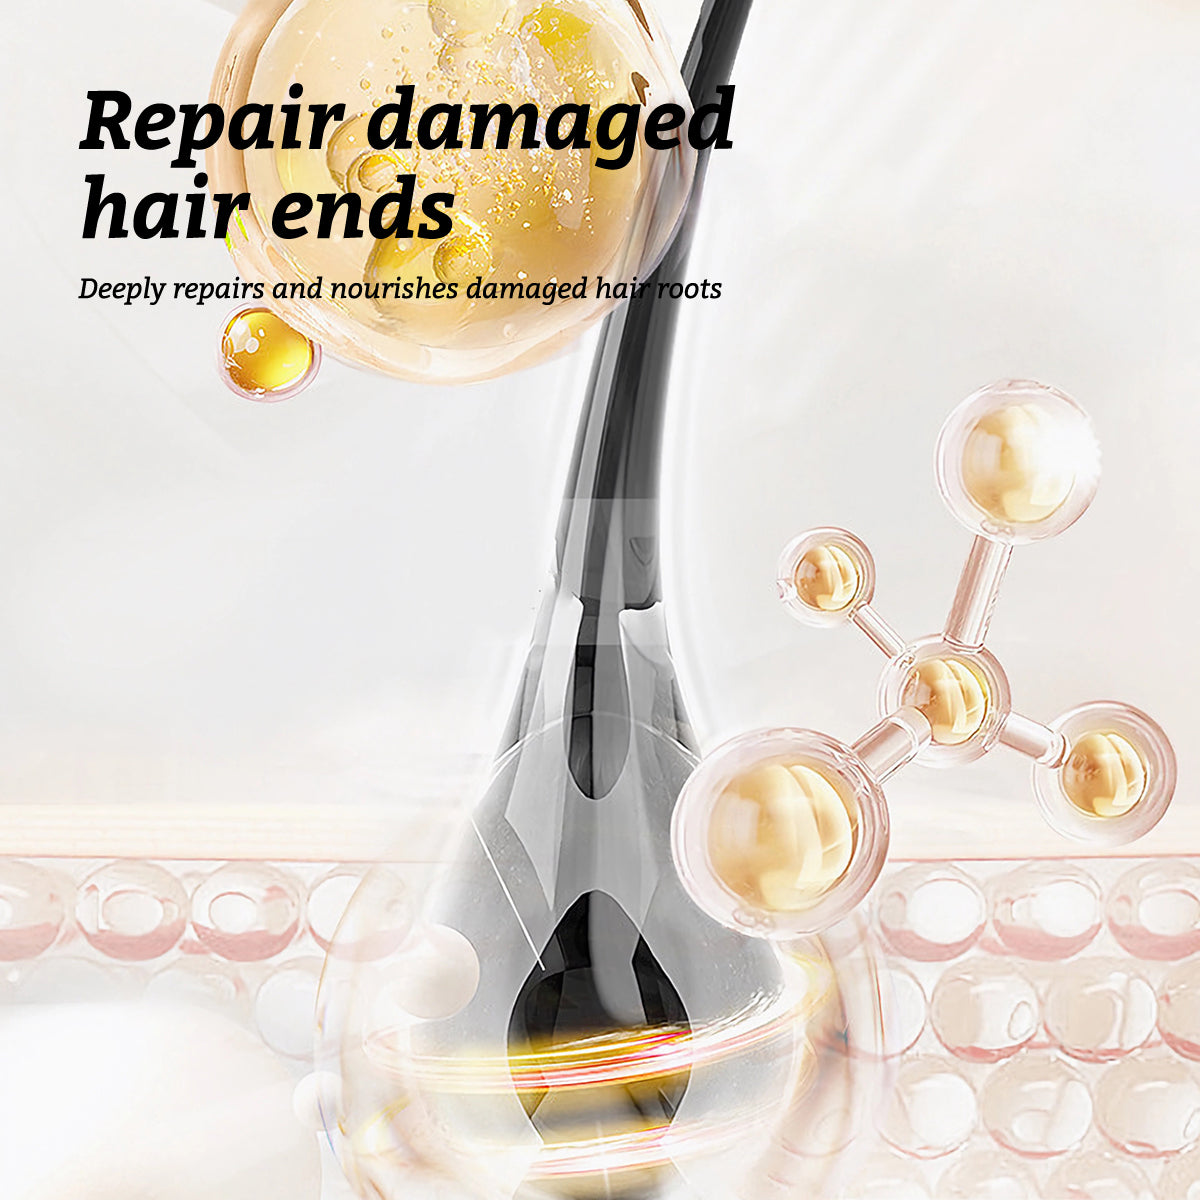 RtopR【Official Store】Moroccan Hair Essential Oil Dry Hair Repair Hair Oil Repair Damaged Hair Hair Repair Products